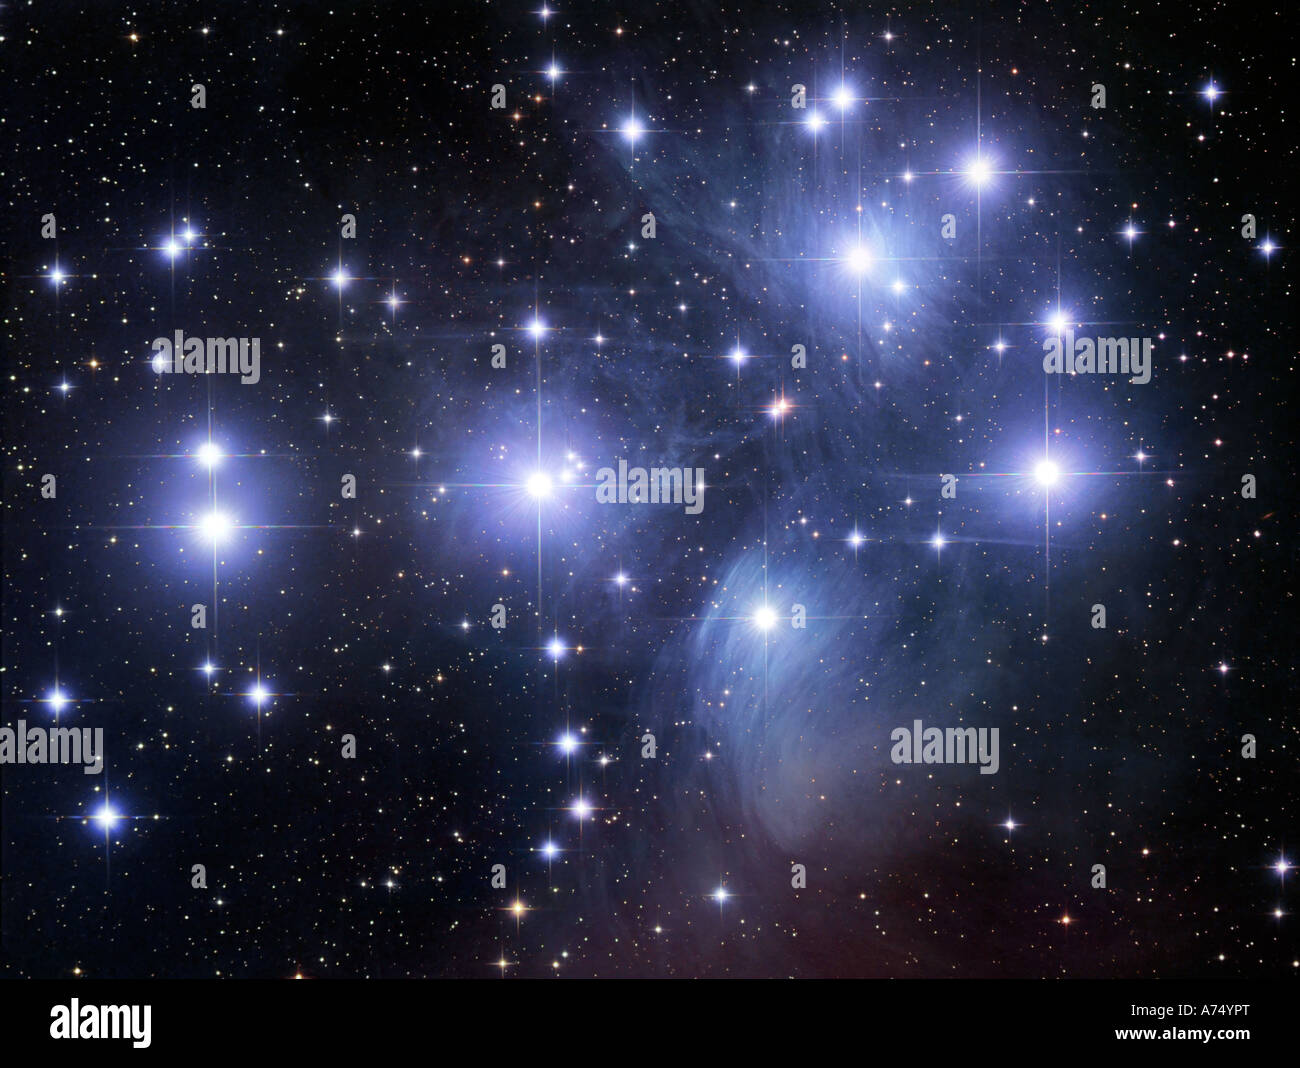 Die Plejaden, auch bekannt als Messier 45 oder die sieben Schwestern, ist der Name eines open Clusters im Sternbild Stier. Stockfoto